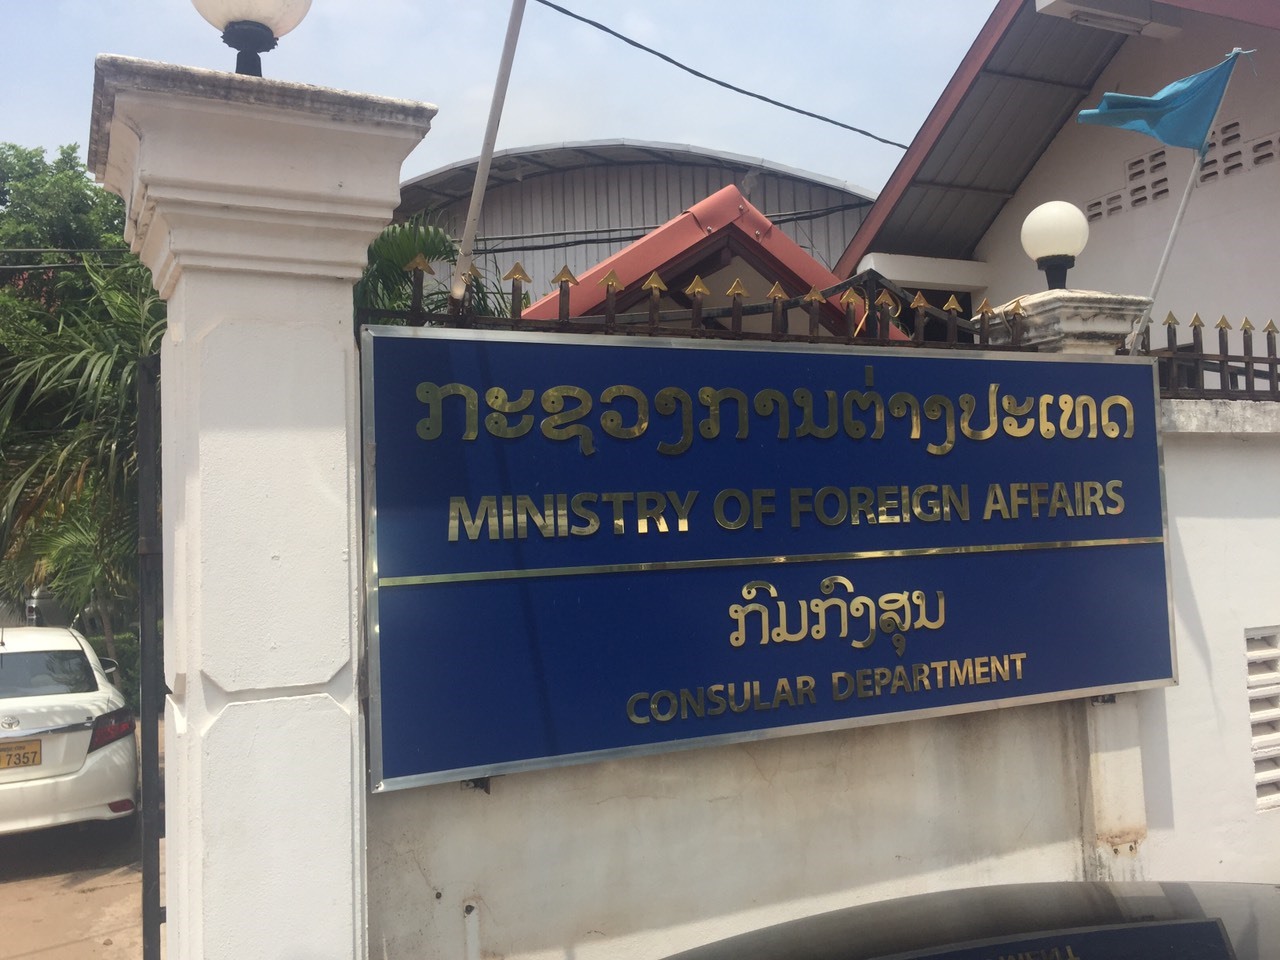 Cục Lãnh sự, Bộ Ngoại giao Lào ở thủ đô Vientiane, nơi tiếp nhận hồ sơ xin nhập cảnh lao động nước ngoài